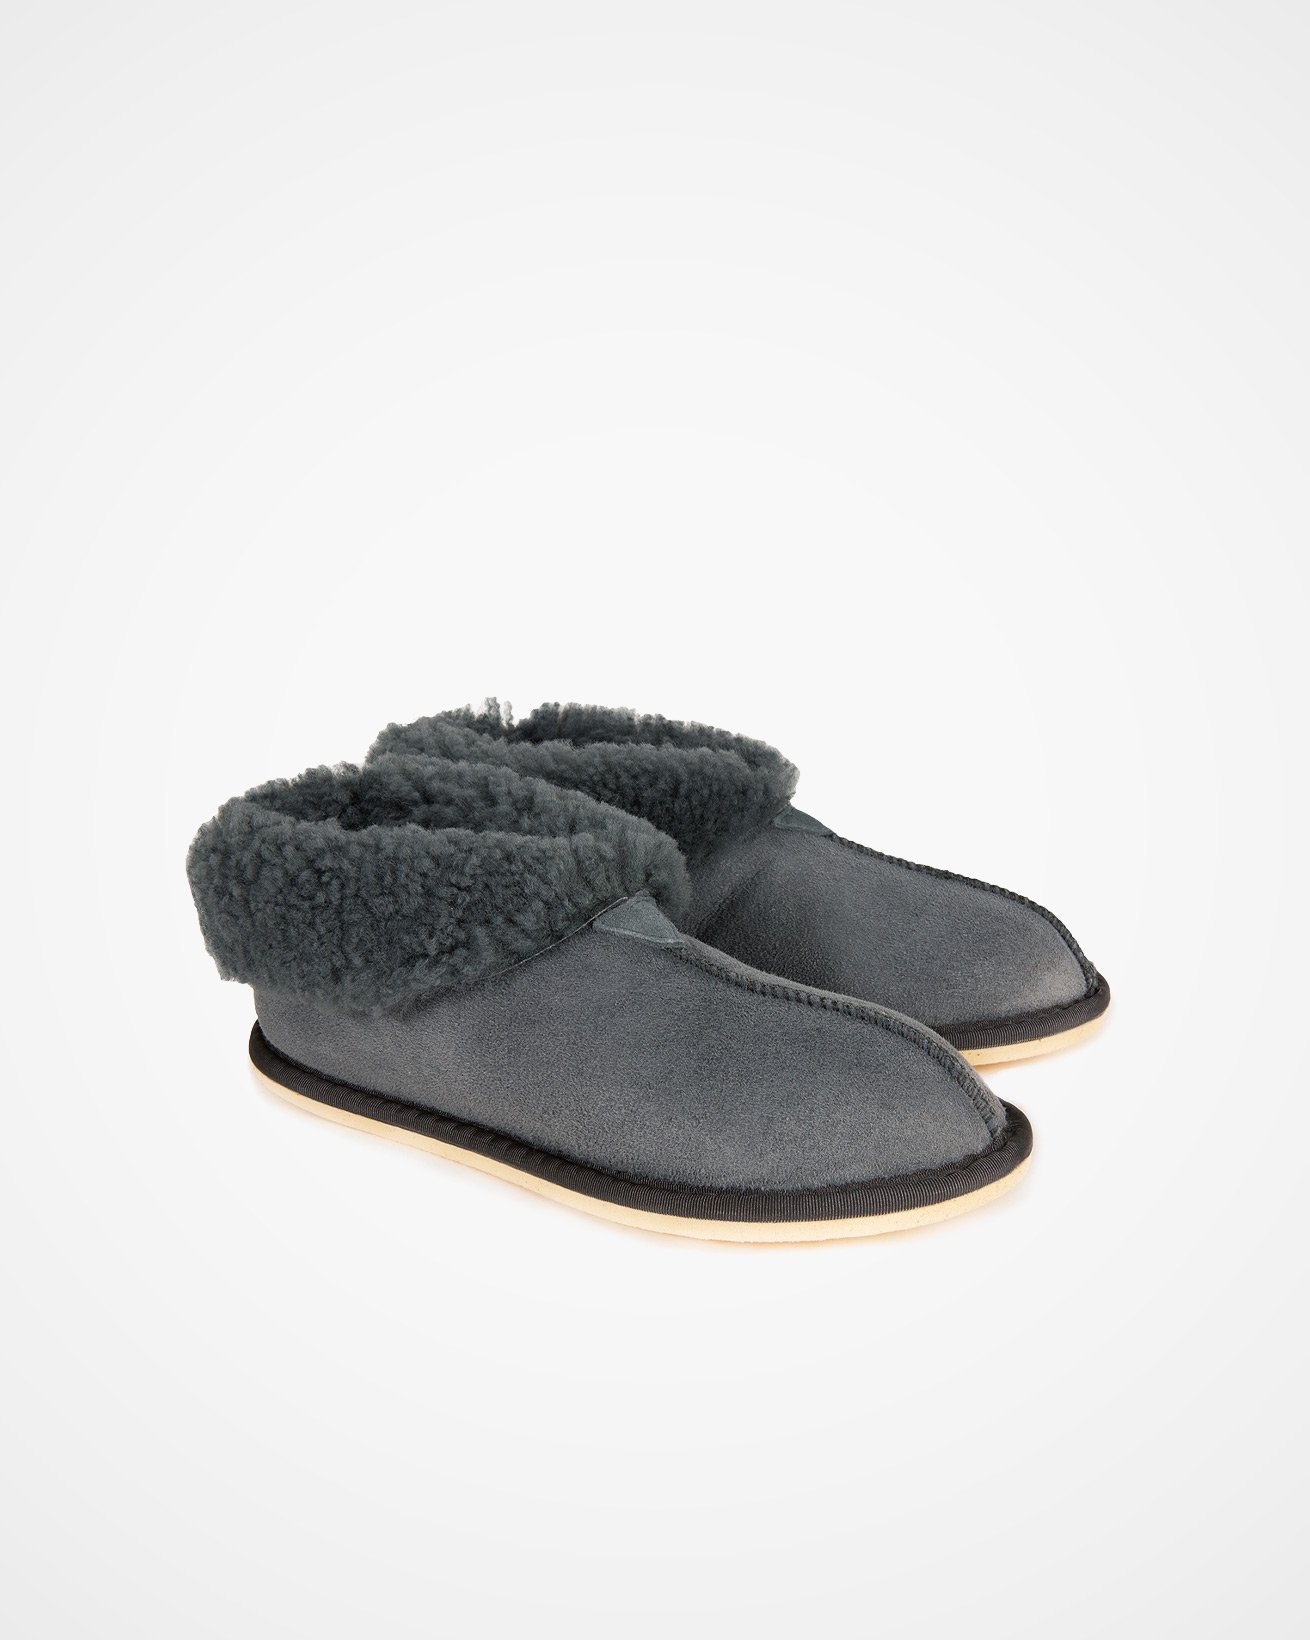 2100_ladies-sheepskin-bootee-slippers_dark-grey_pair.jpg